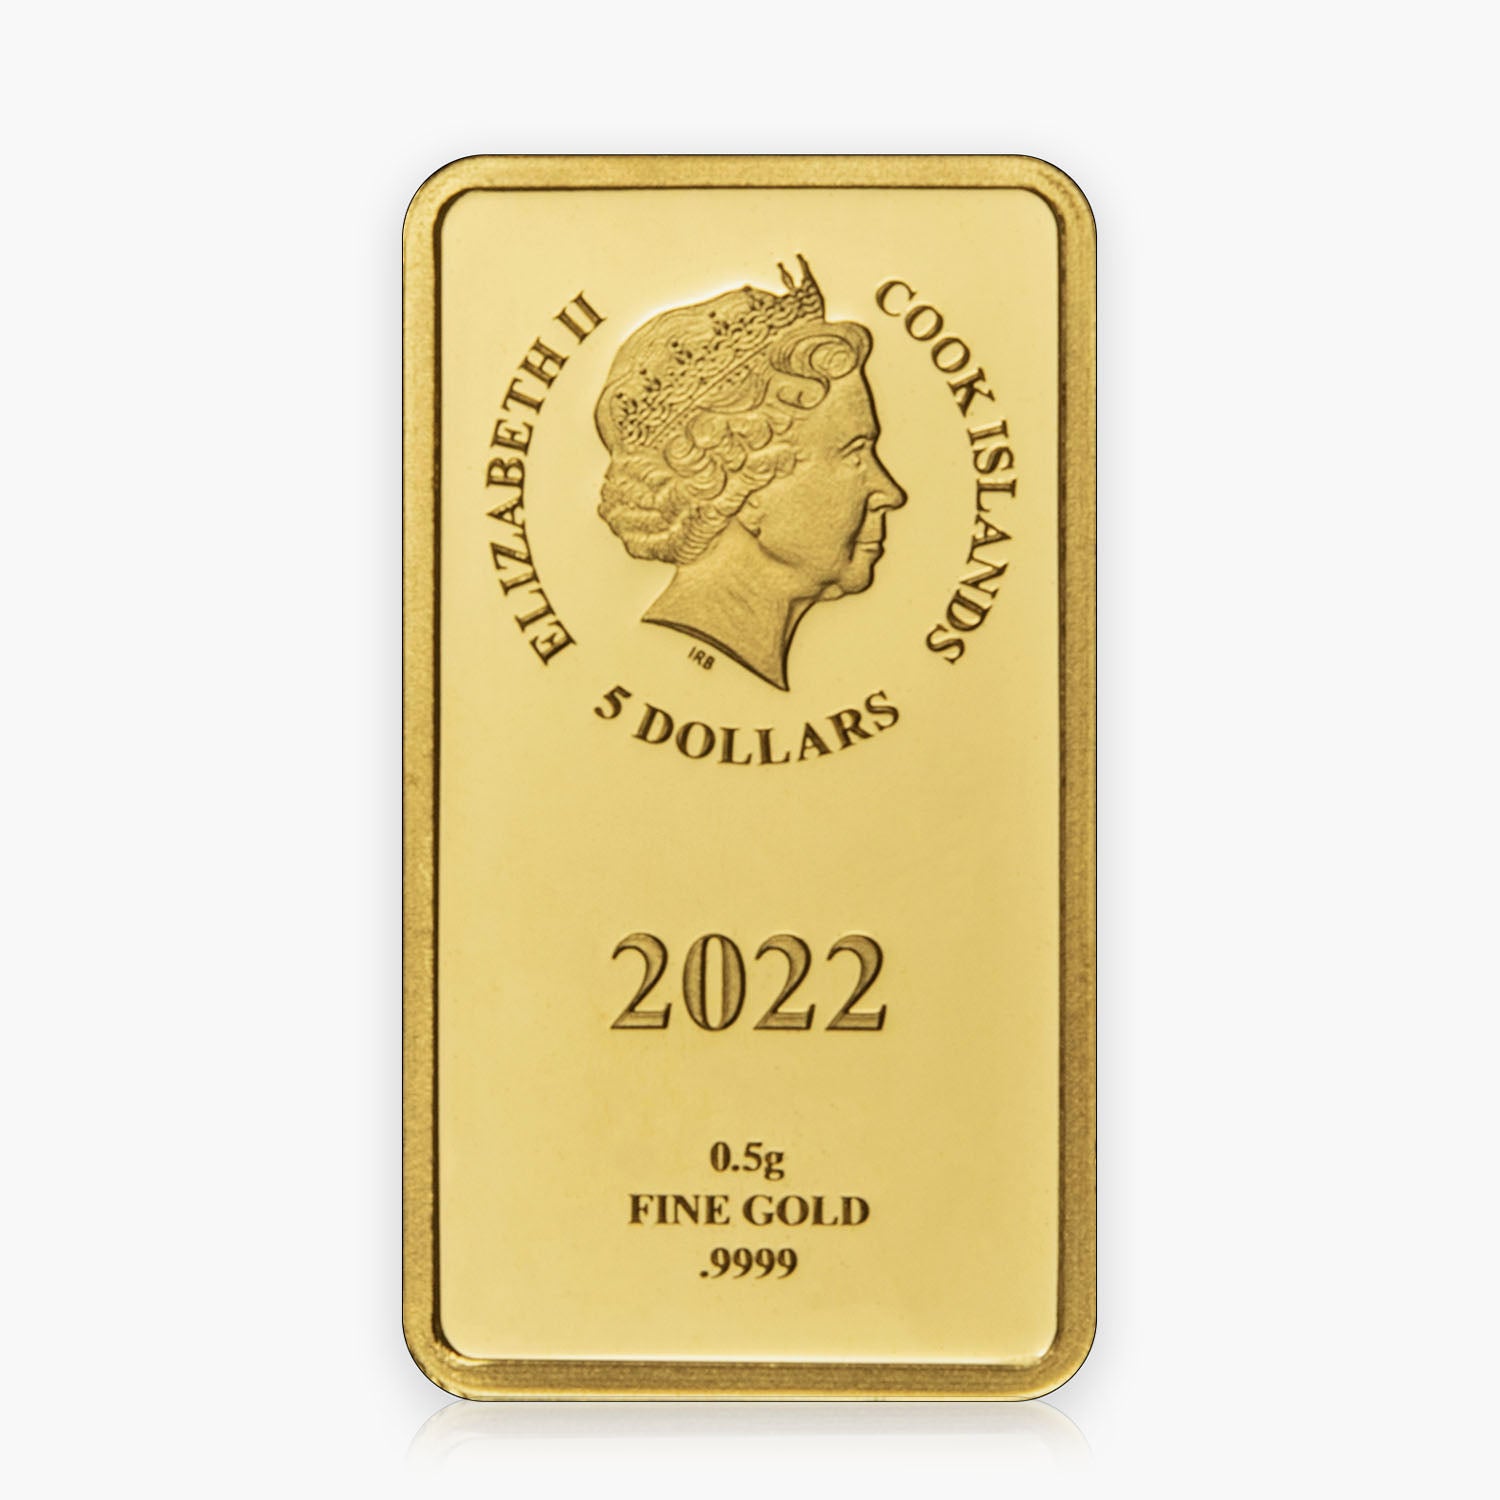 公式ロード・オブ・ザ・リング 2023 純金コイン コレクション